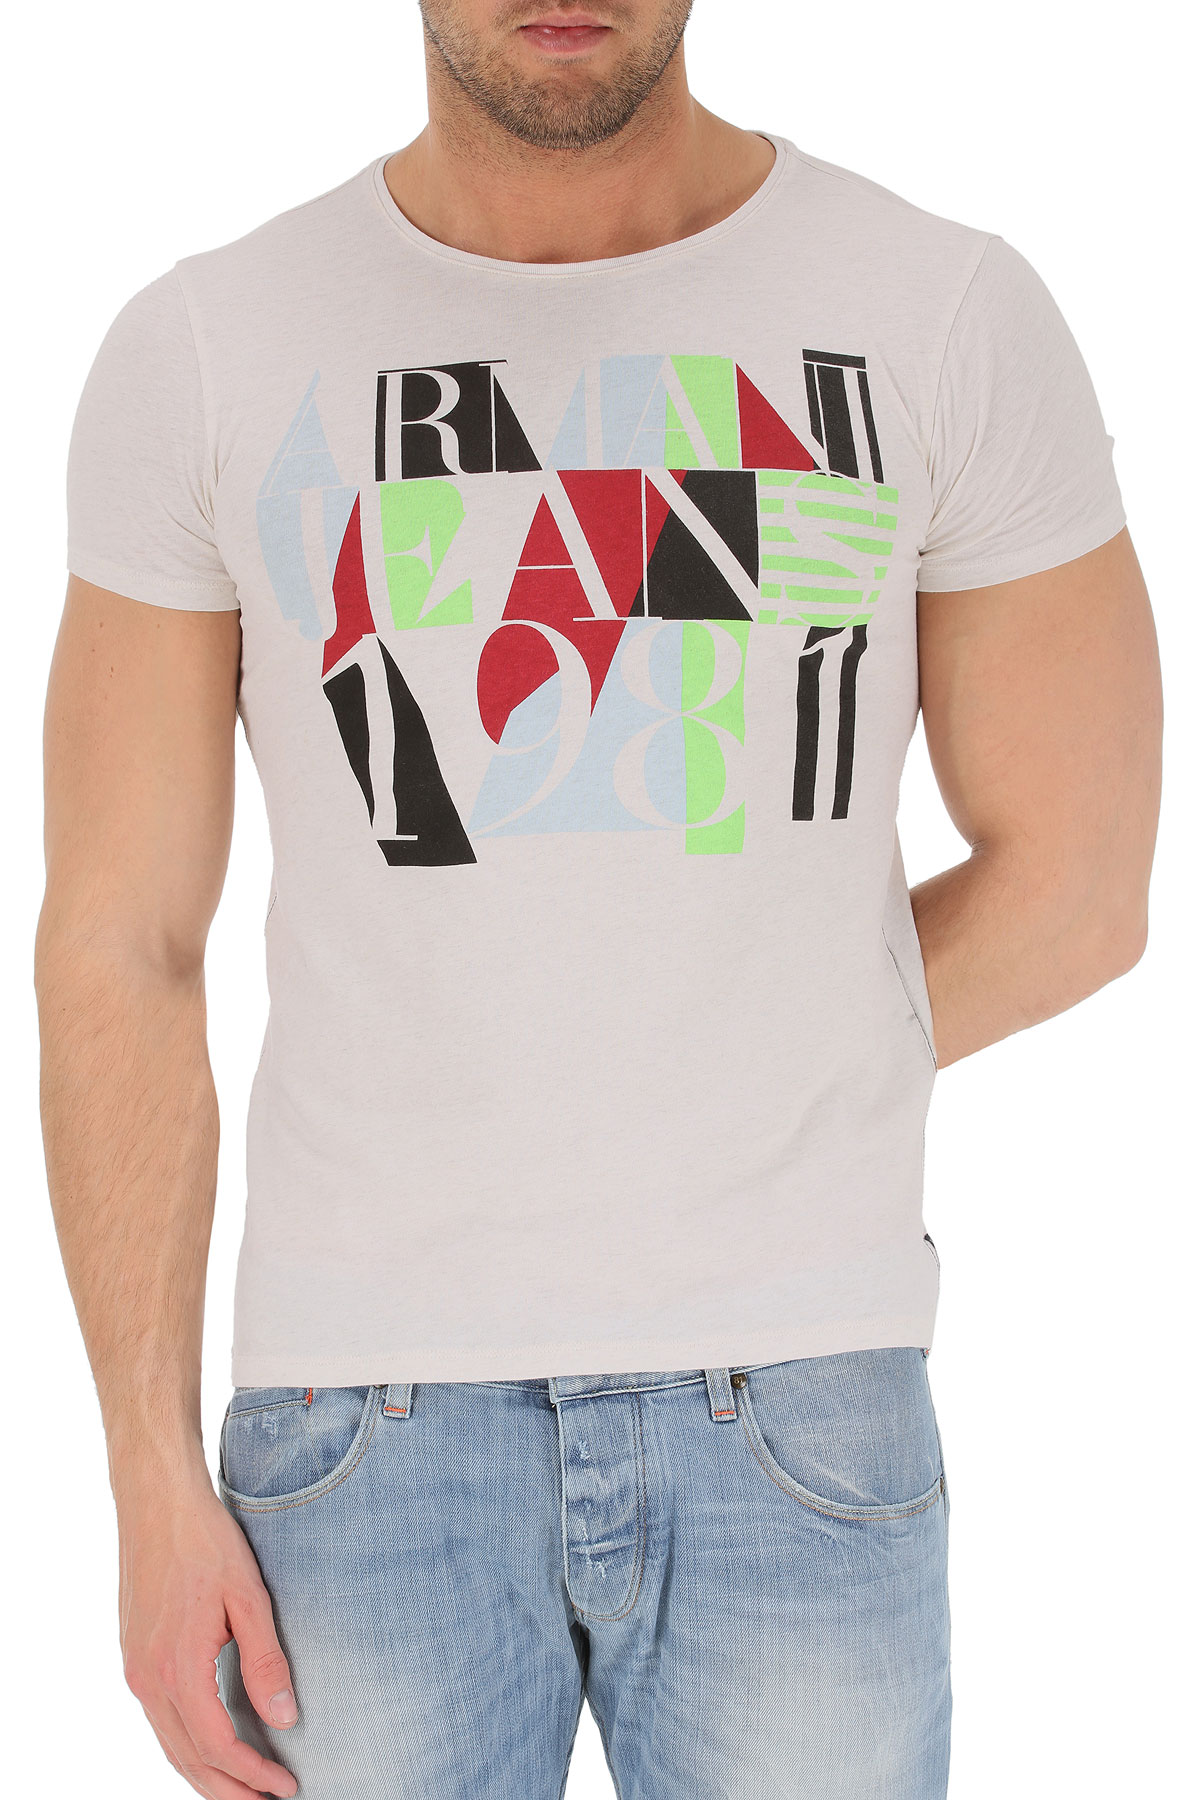 Armani Jeans AJ T Shirt Sweatshirt Cotton Man White A6H36ZX 10 Sz XL MAKE OFFER